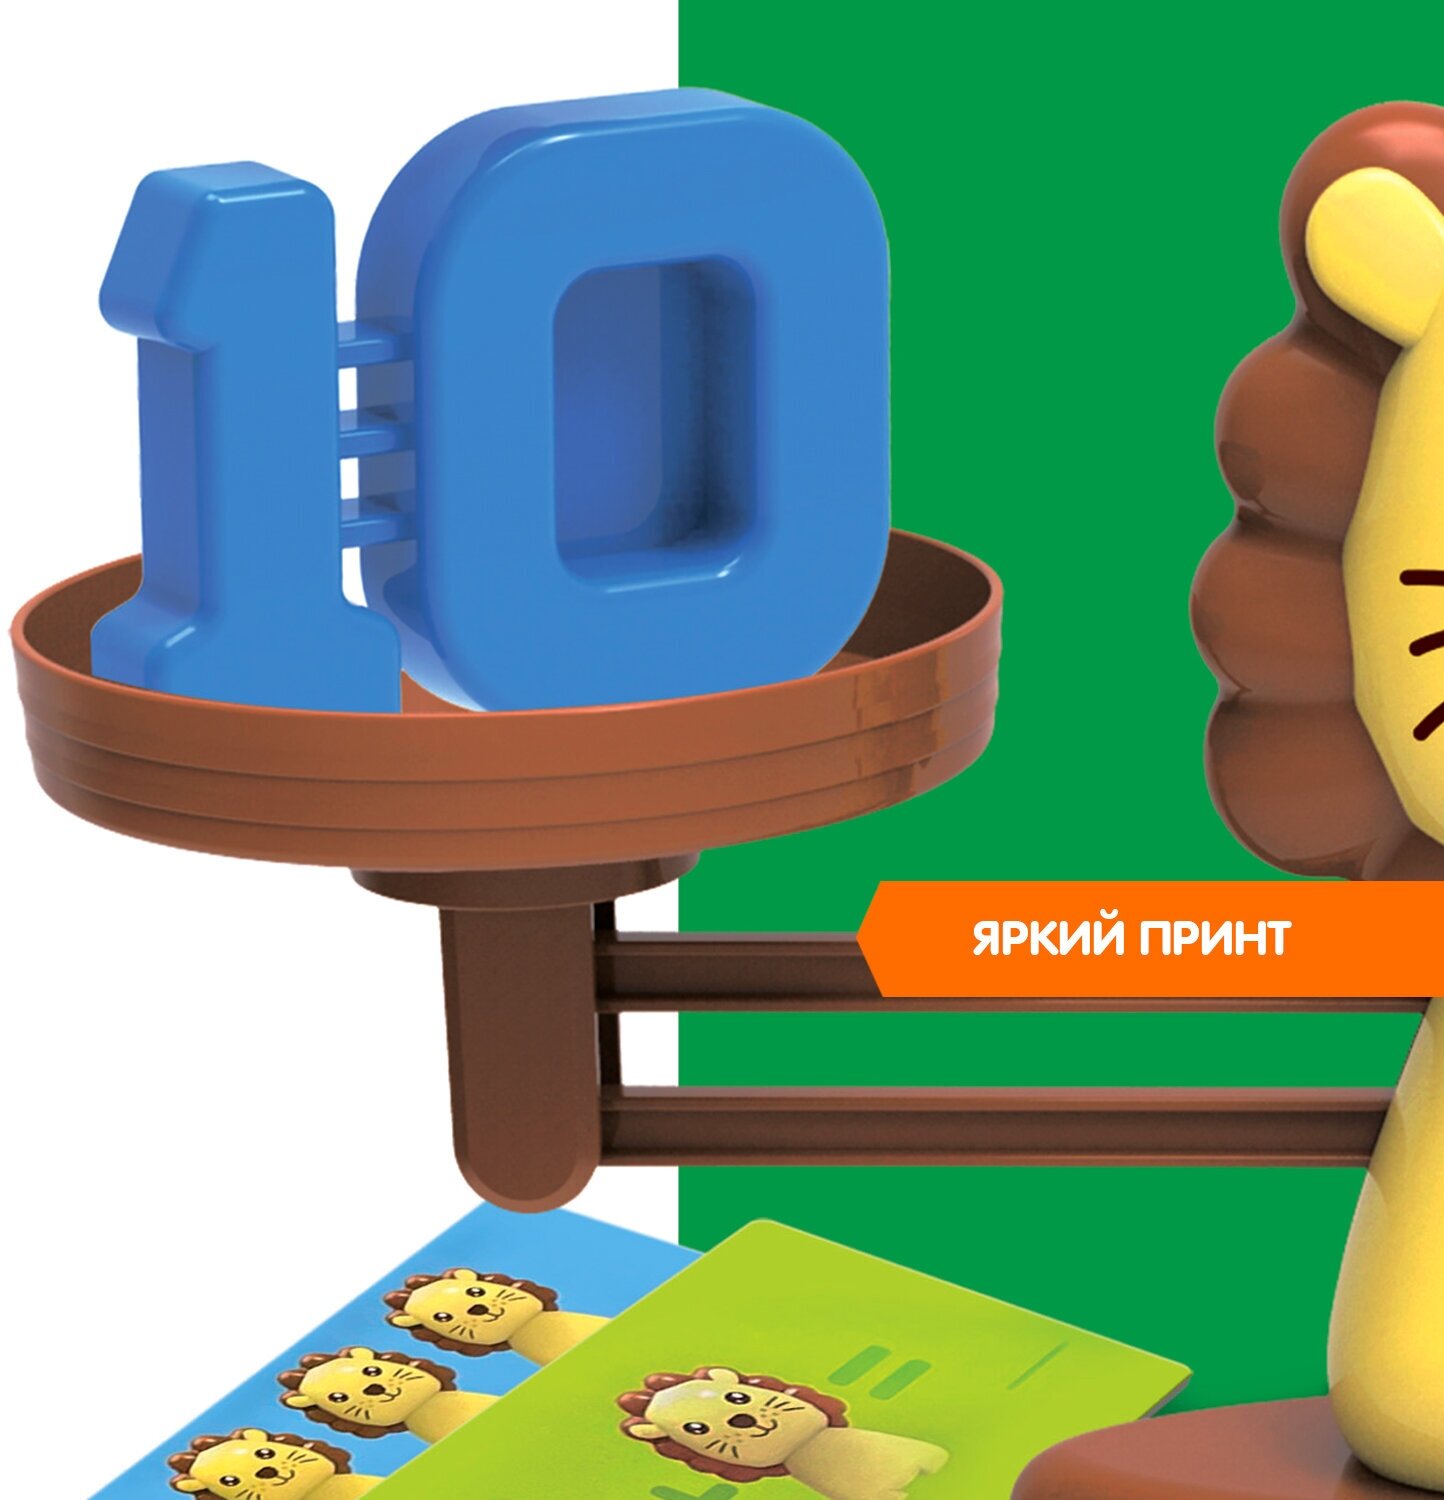 Развивающая настольная игра Считай и проверяй Львёнок Bondibon обучающая игрушка учим цифры и считать, весы балансир / Подарок для дошкольников